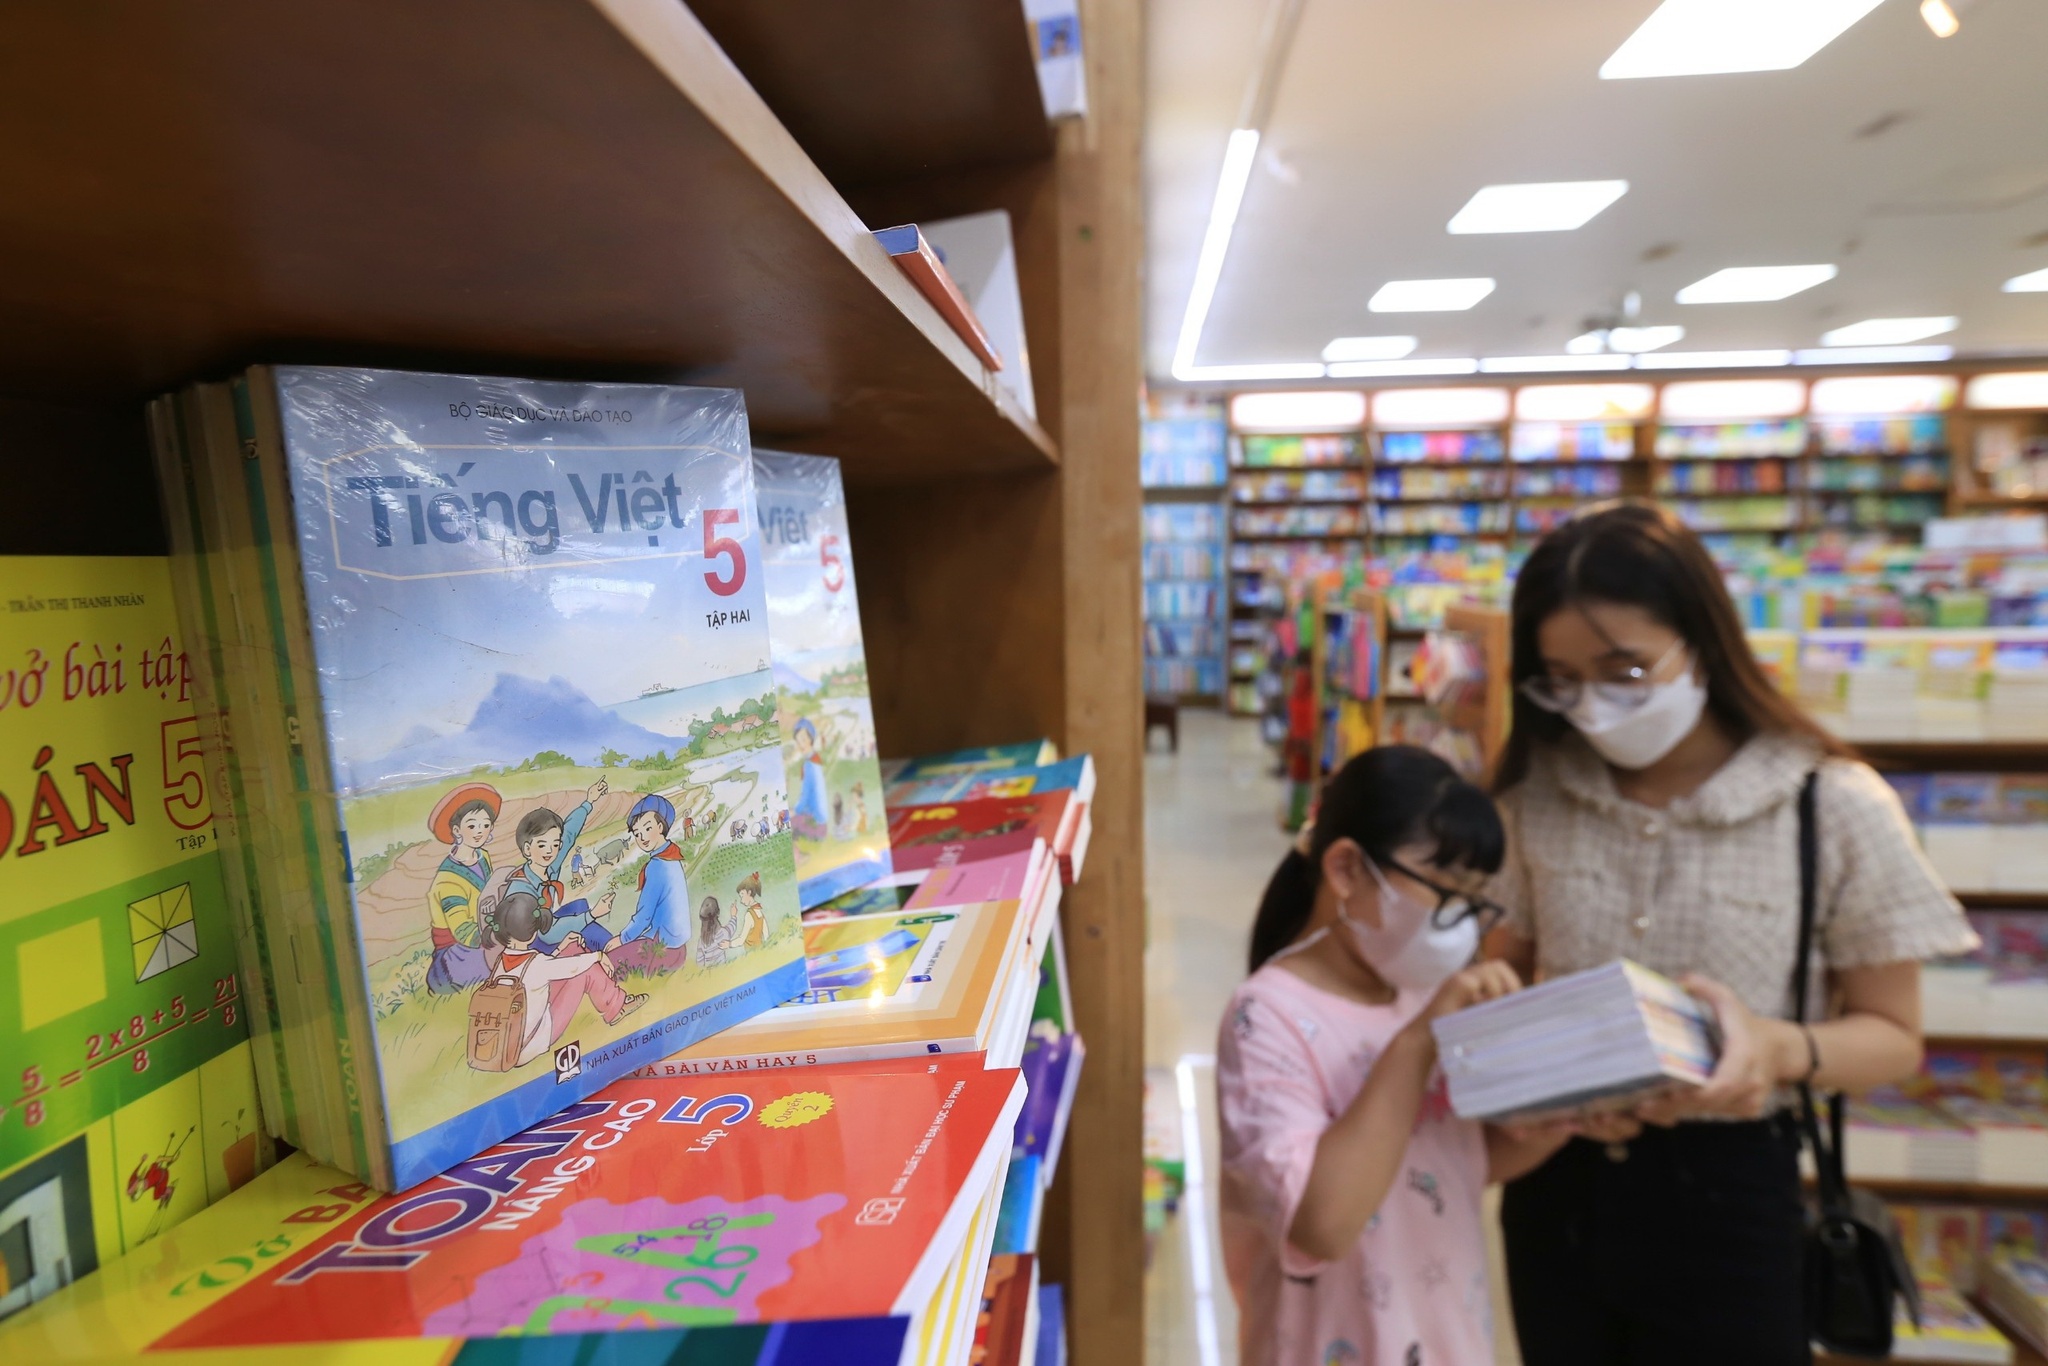 Giá sách giáo khoa cao gấp 3 - 4 lần, NXB Giáo dục Việt Nam lãi khủng - ảnh 1